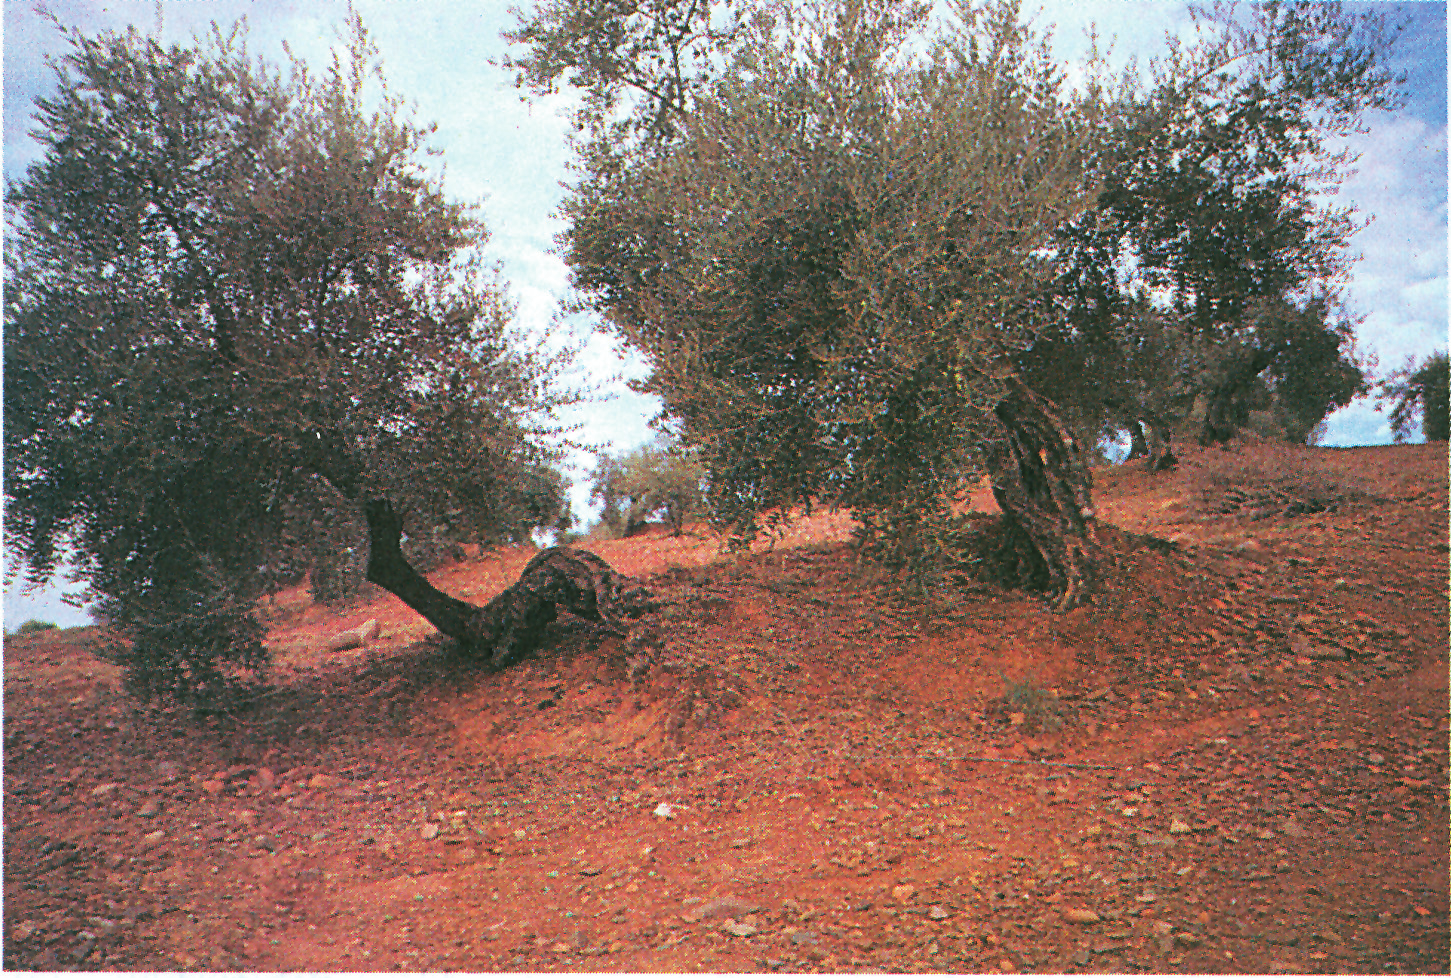 Εικόνα 4-17. Έντονα διαβρωμένη περιοχή. Οι ρίζες των δένδρων συγκρατούν το έδαφος στην αρχική του θέση.